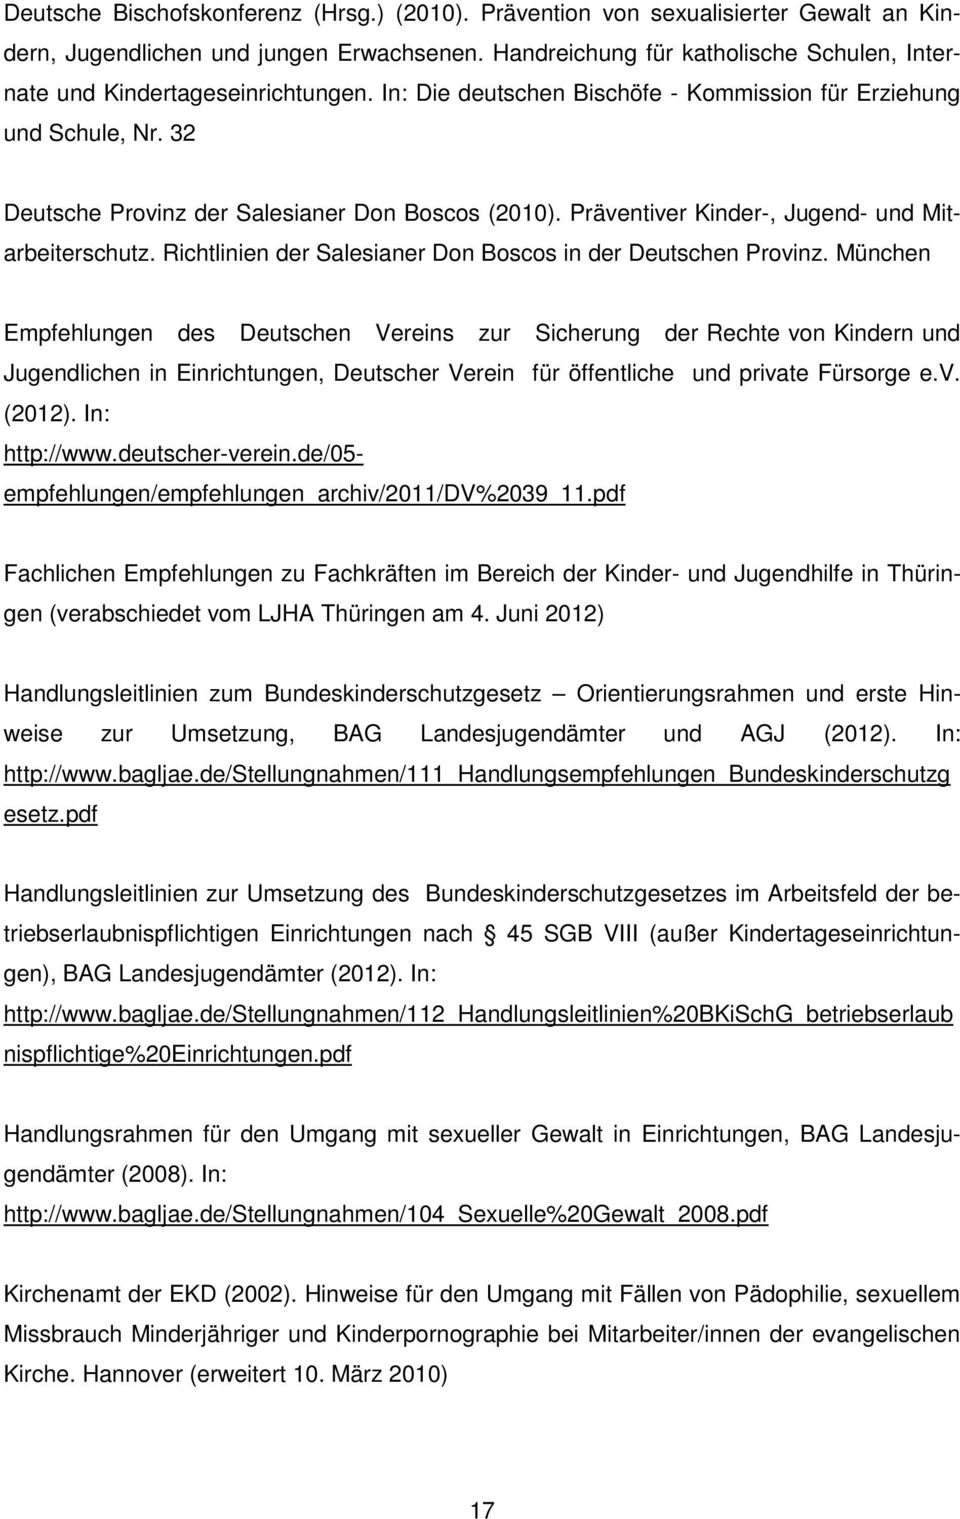 32 Deutsche Provinz der Salesianer Don Boscos (2010). Präventiver Kinder-, Jugend- und Mitarbeiterschutz. Richtlinien der Salesianer Don Boscos in der Deutschen Provinz.